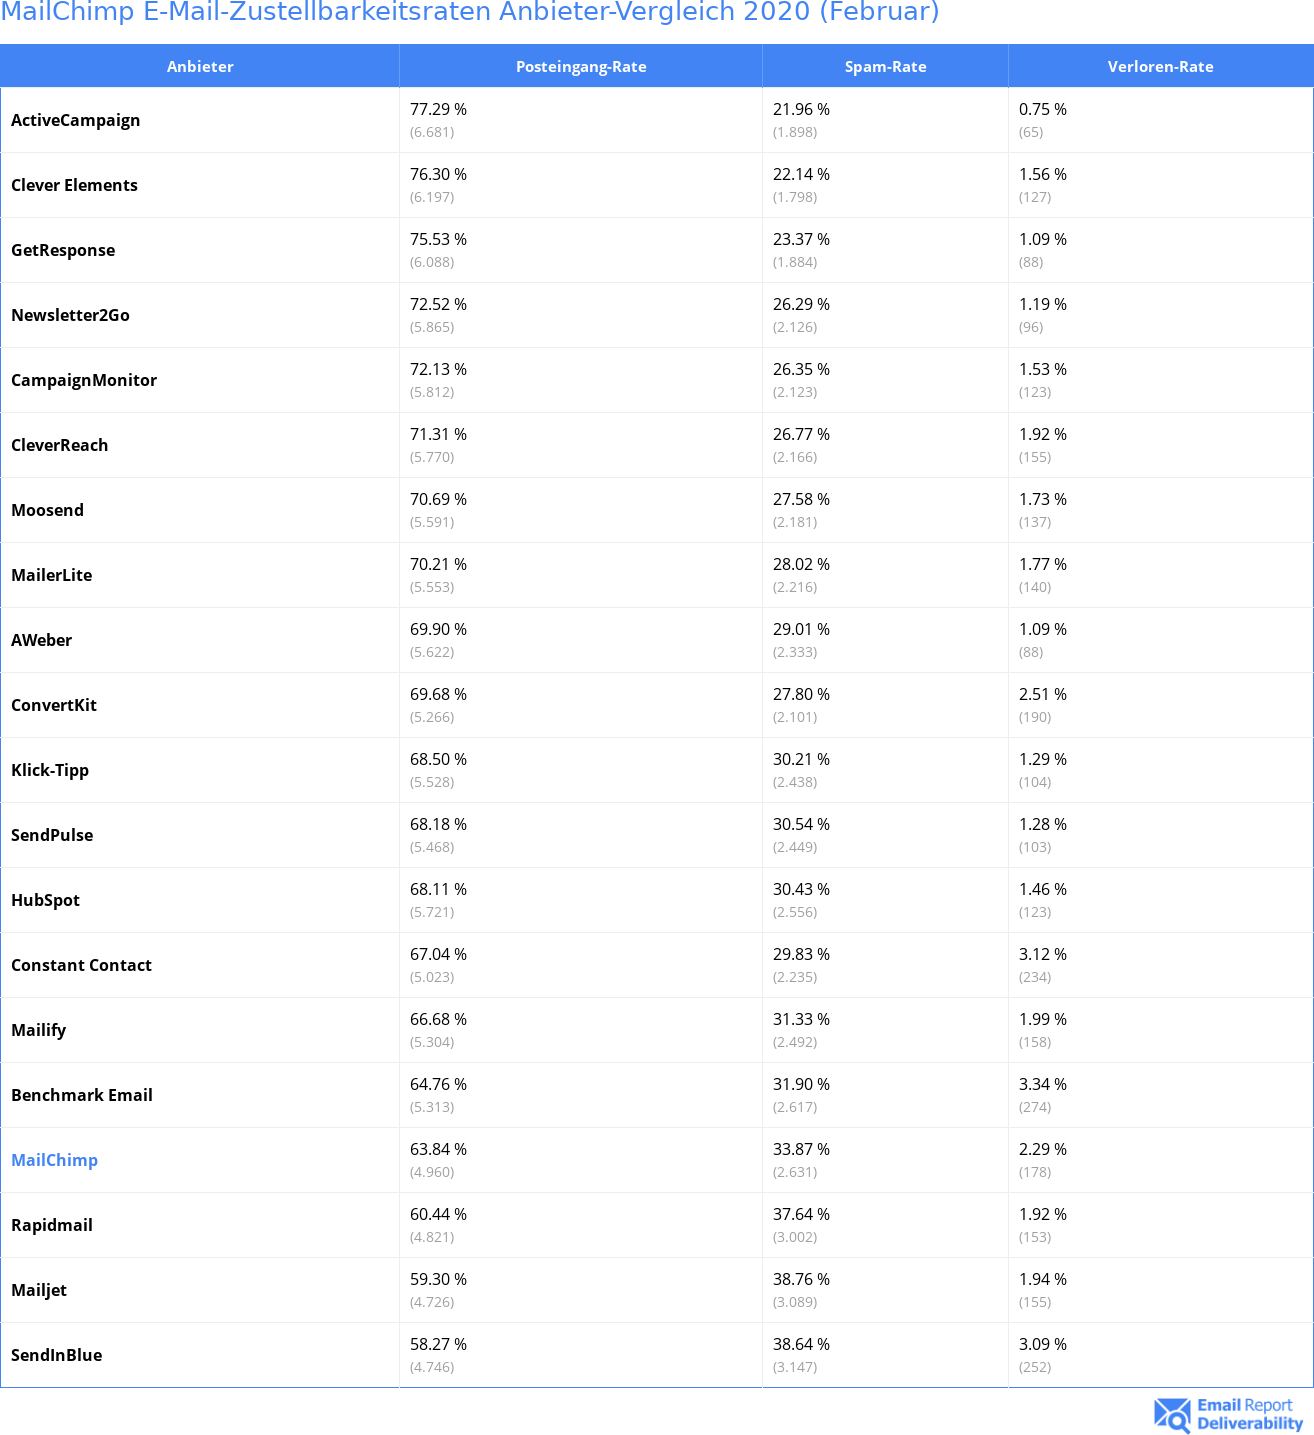 MailChimp E-Mail-Zustellbarkeitsraten Anbieter-Vergleich 2020 (Februar)